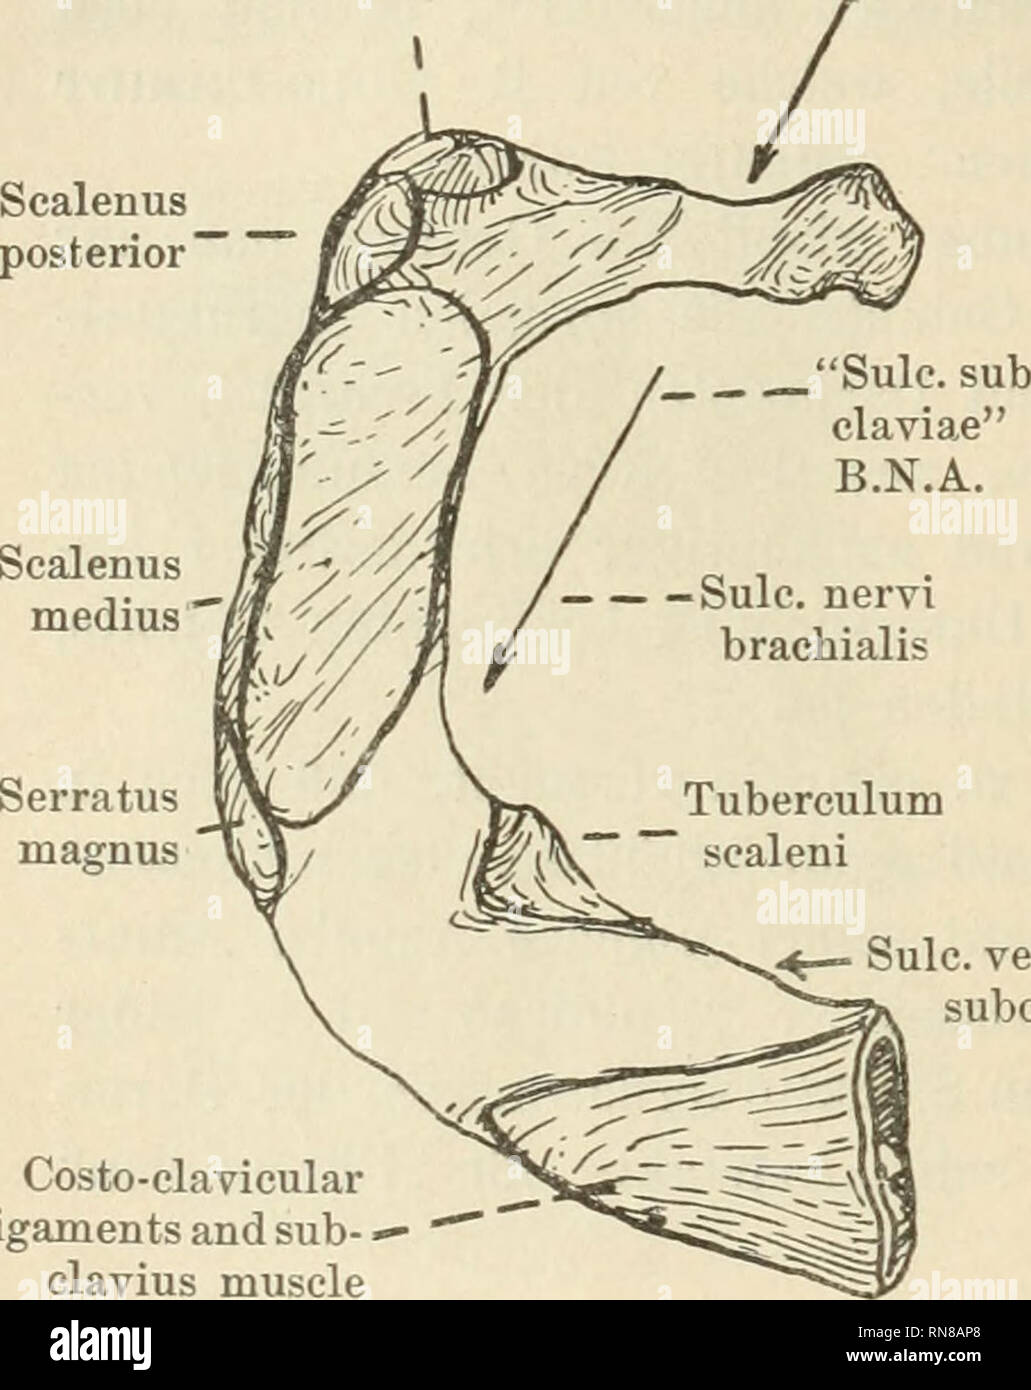 Anatomischer Anzeiger. Anatomía, comparativo; Anatomía, comparativos. 26  arteria, y del de la ranura (aquí etiquetados "sulcus